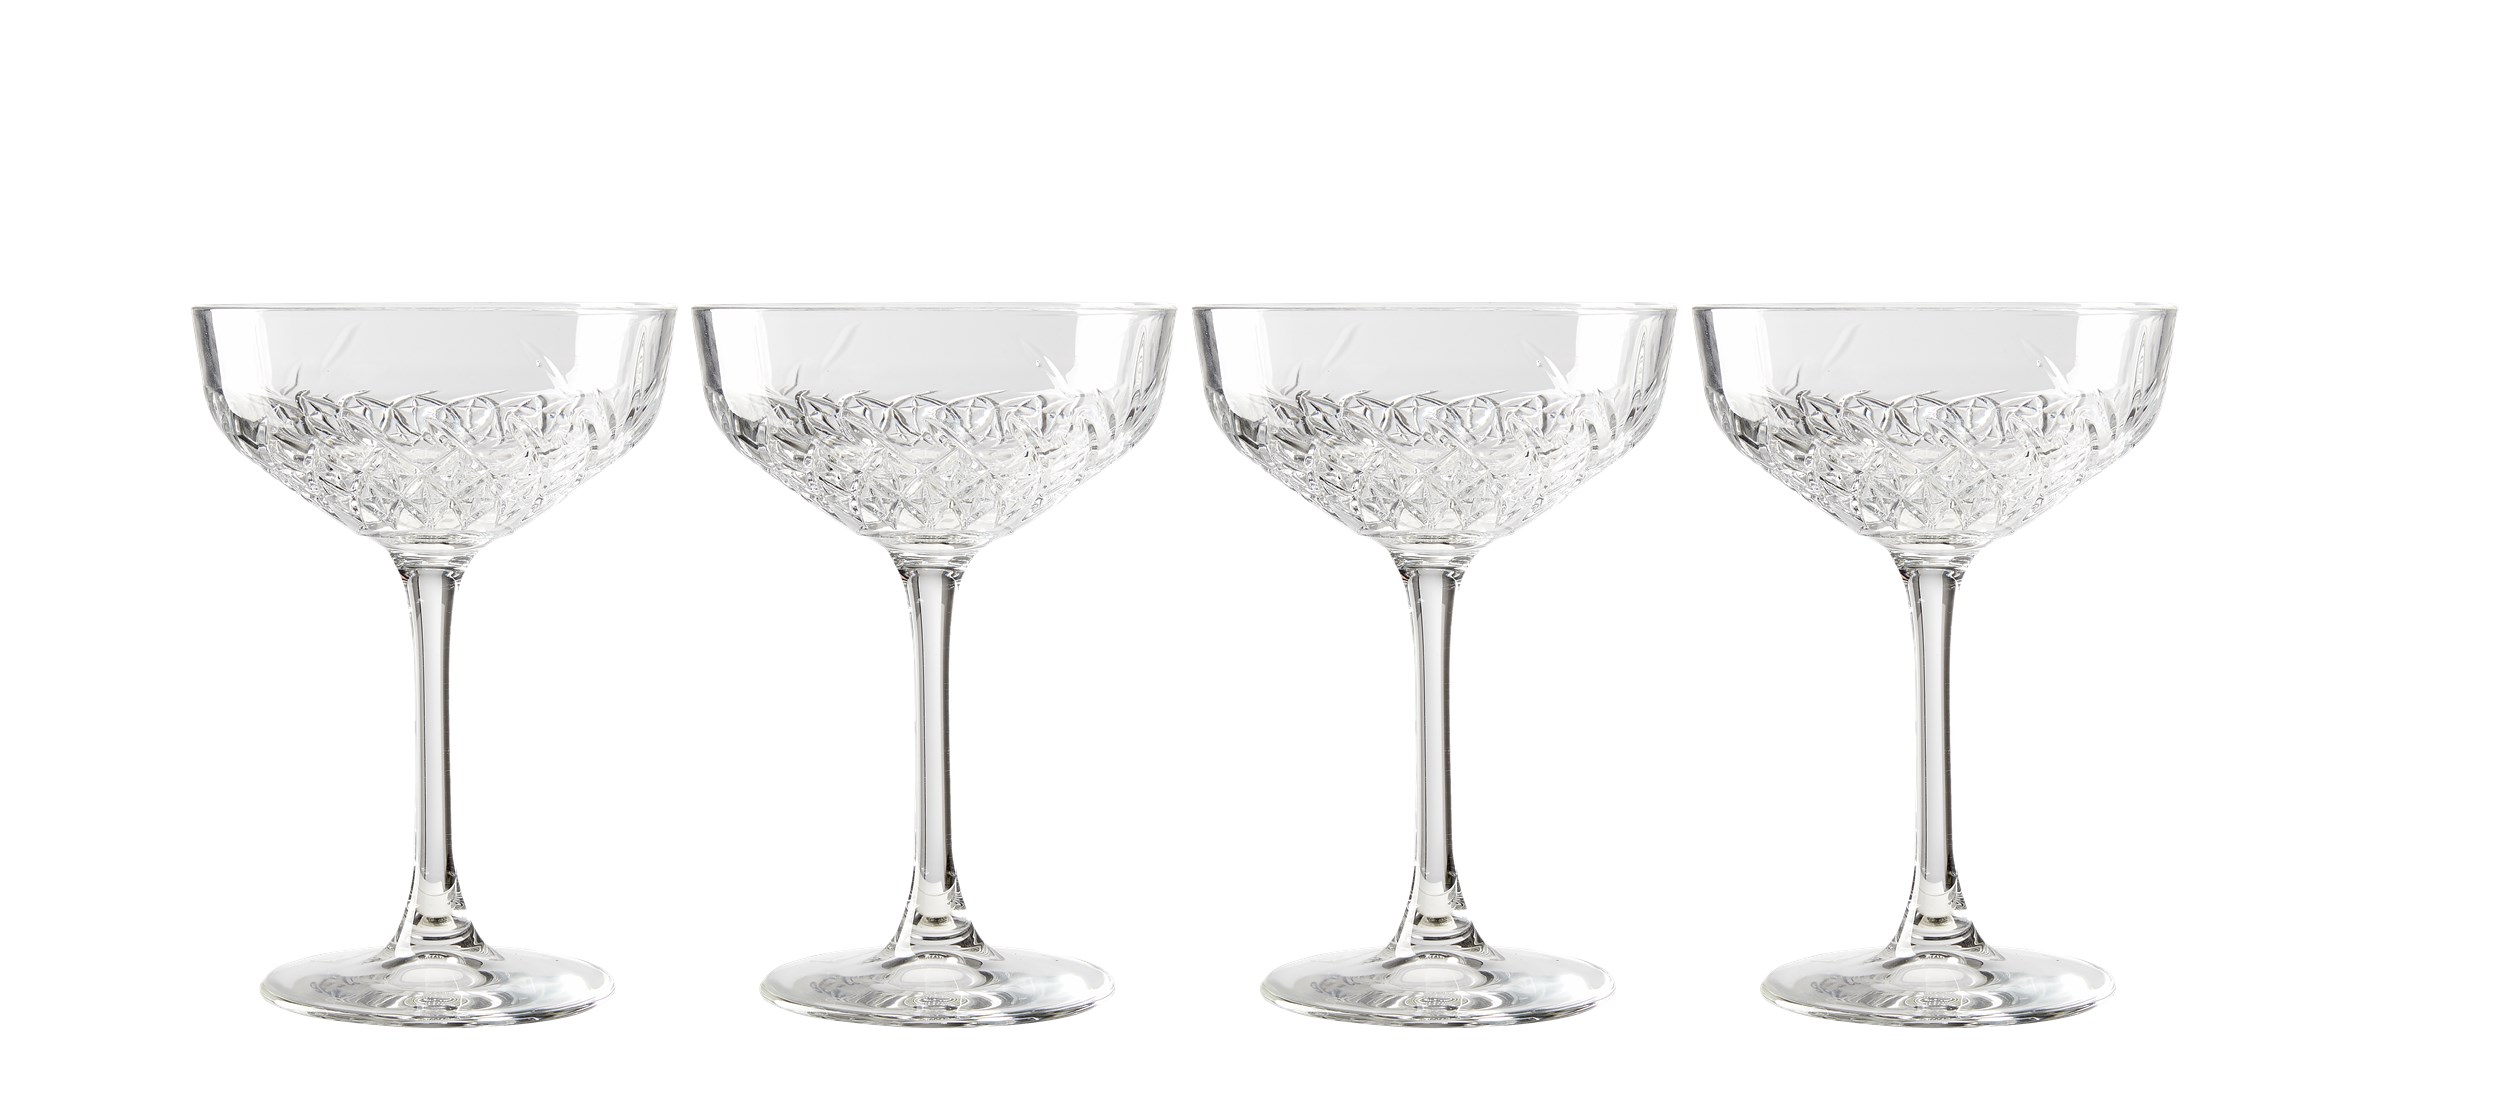 Timeless cocktailglas i låda - Genomskinligt glas och fasetterat mönster